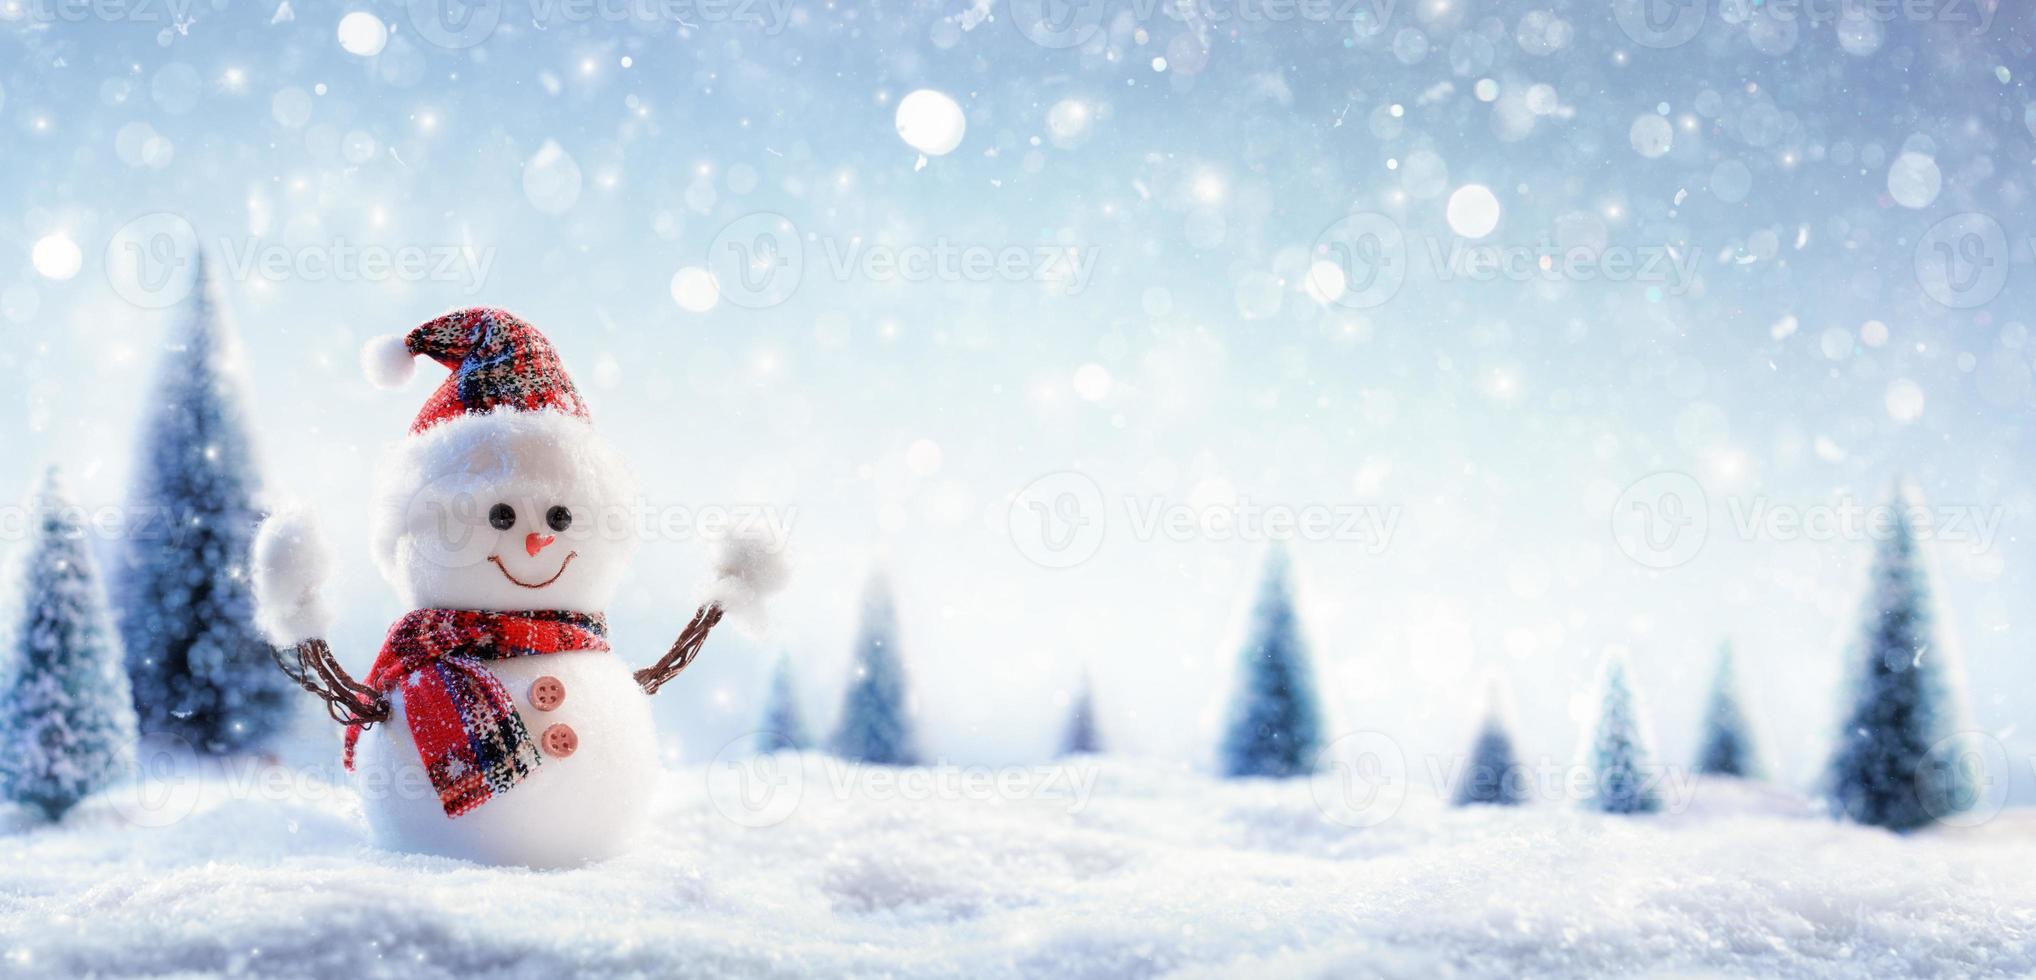 bonhomme de neige dans le paysage hivernal photo